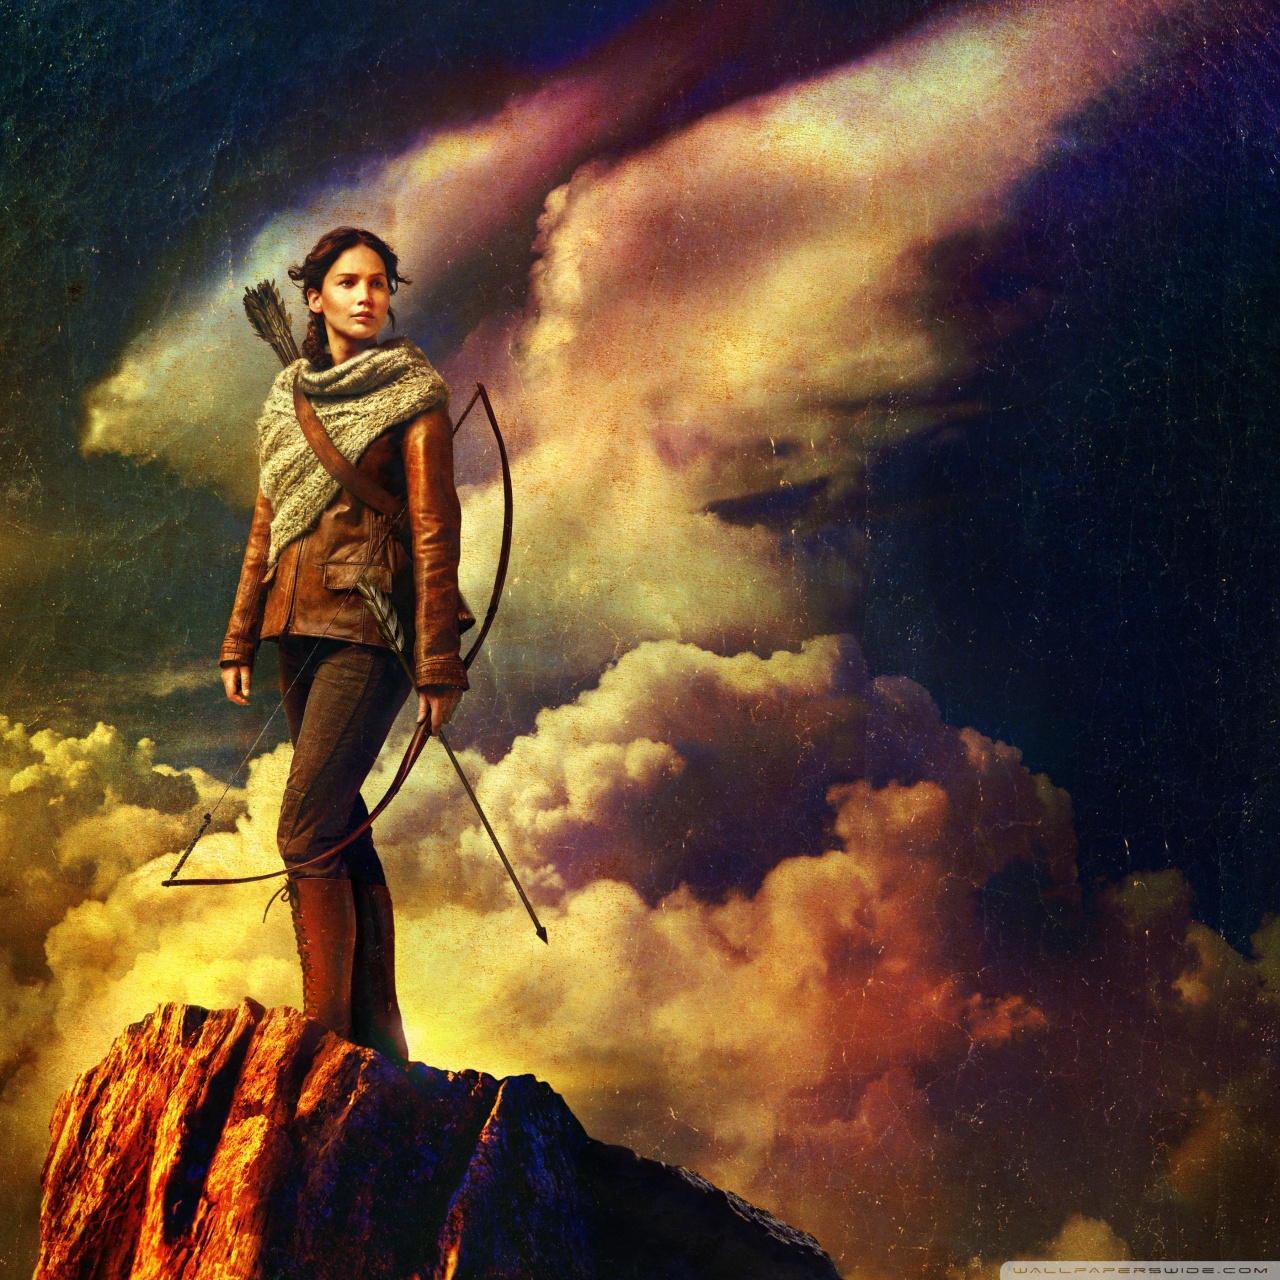 Hunger Games Catching Fire - HD Wallpaper 